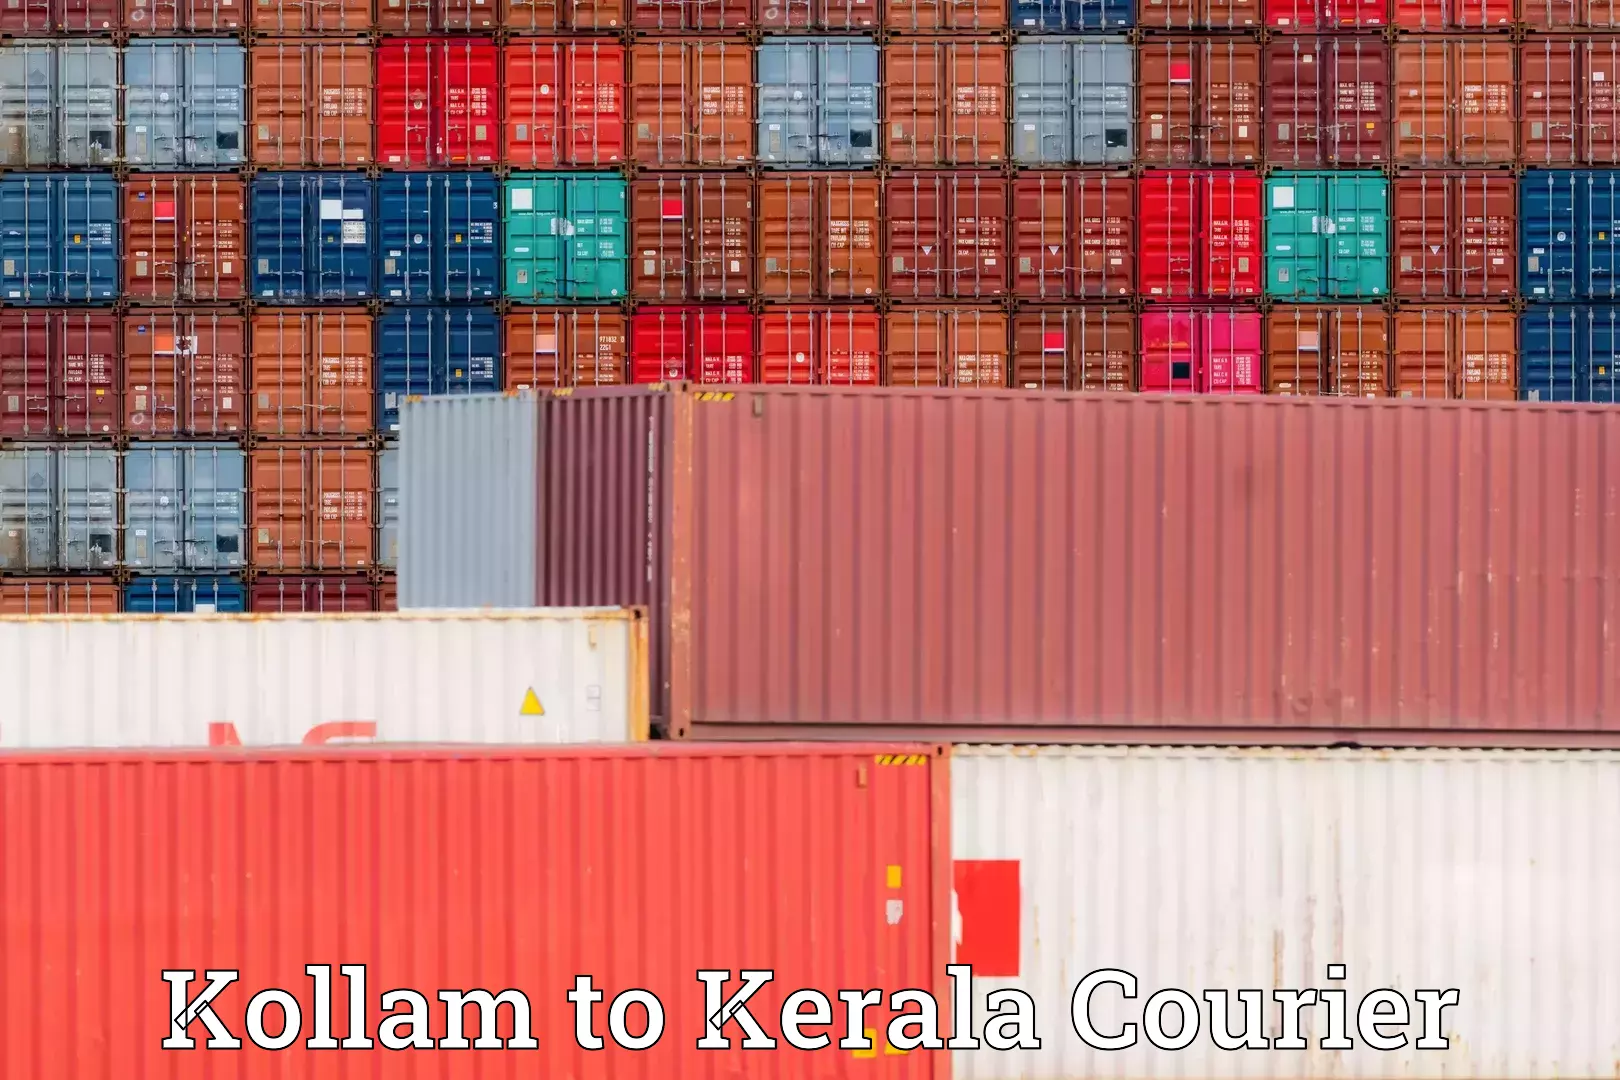 Furniture transport specialists Kollam to Kerala